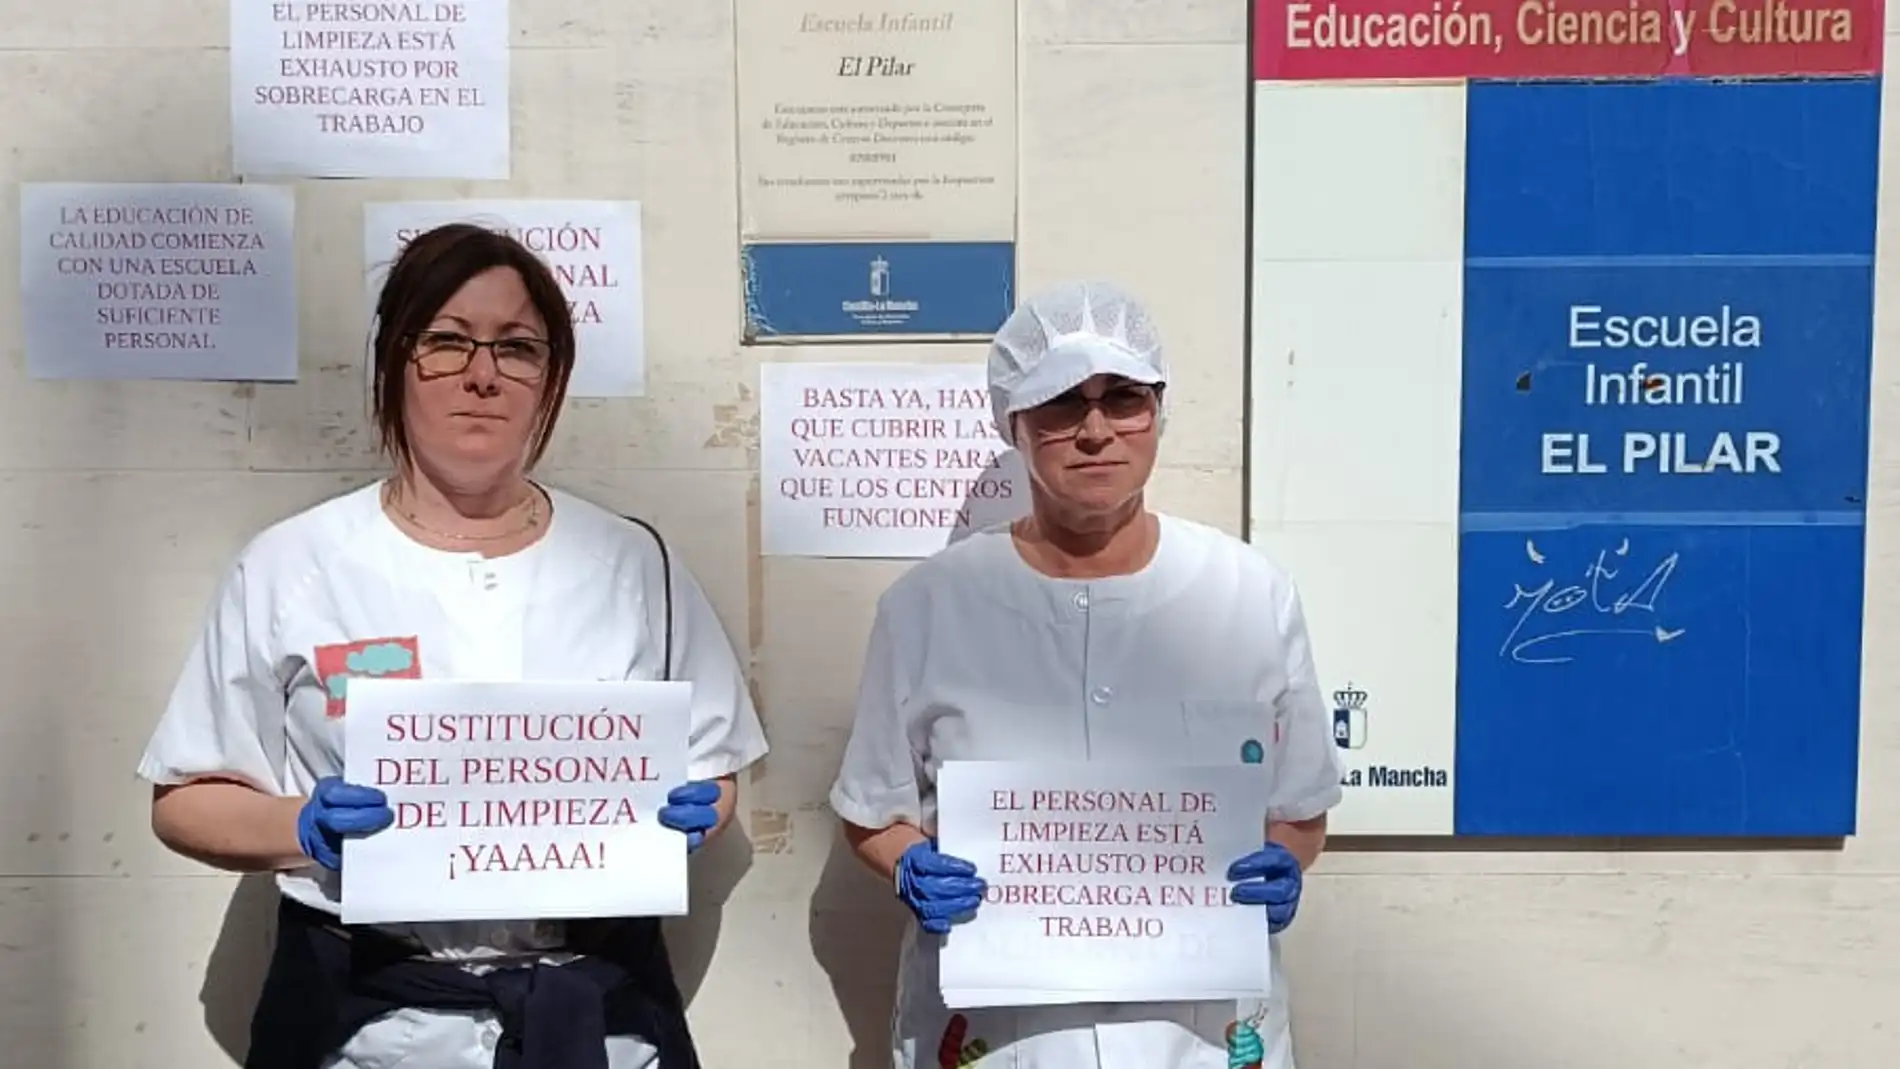 CCOO denuncia la situación insostenible del personal de limpieza en las escuelas infantiles de Albacete y exige soluciones urgentes